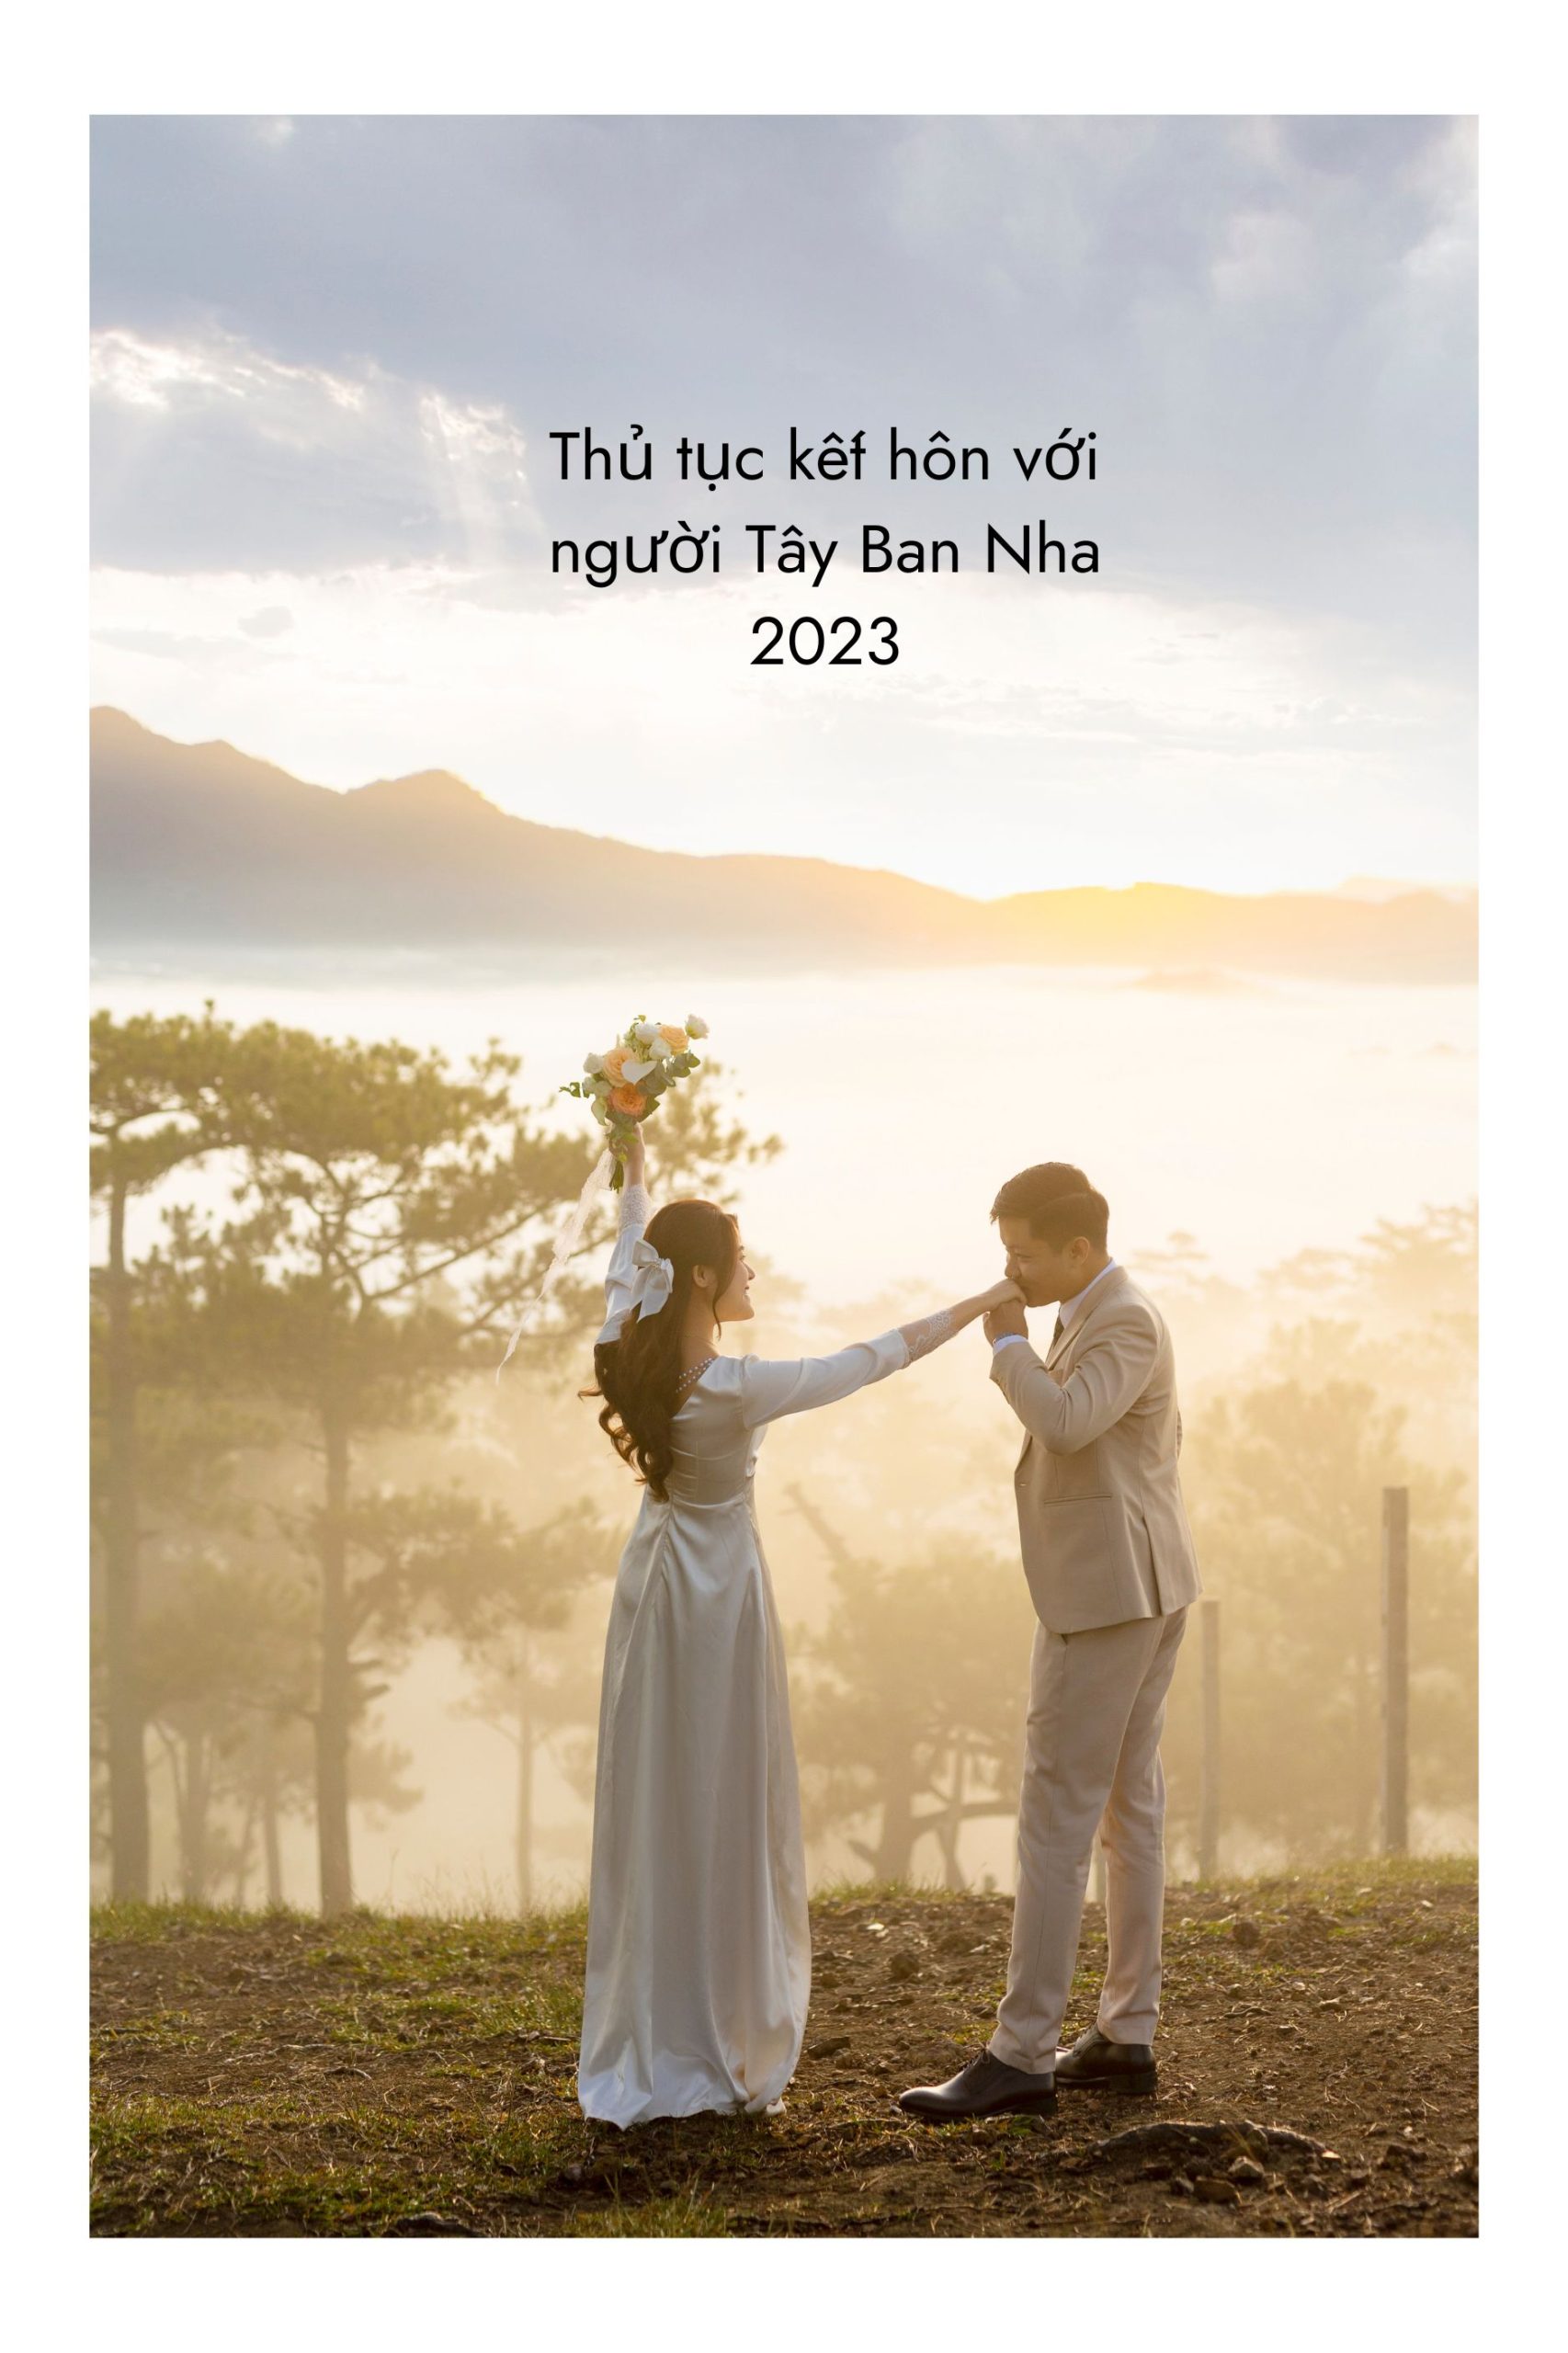 Thủ tục kết hôn với người Tây Ban Nha 2023 | ảnh minh họa